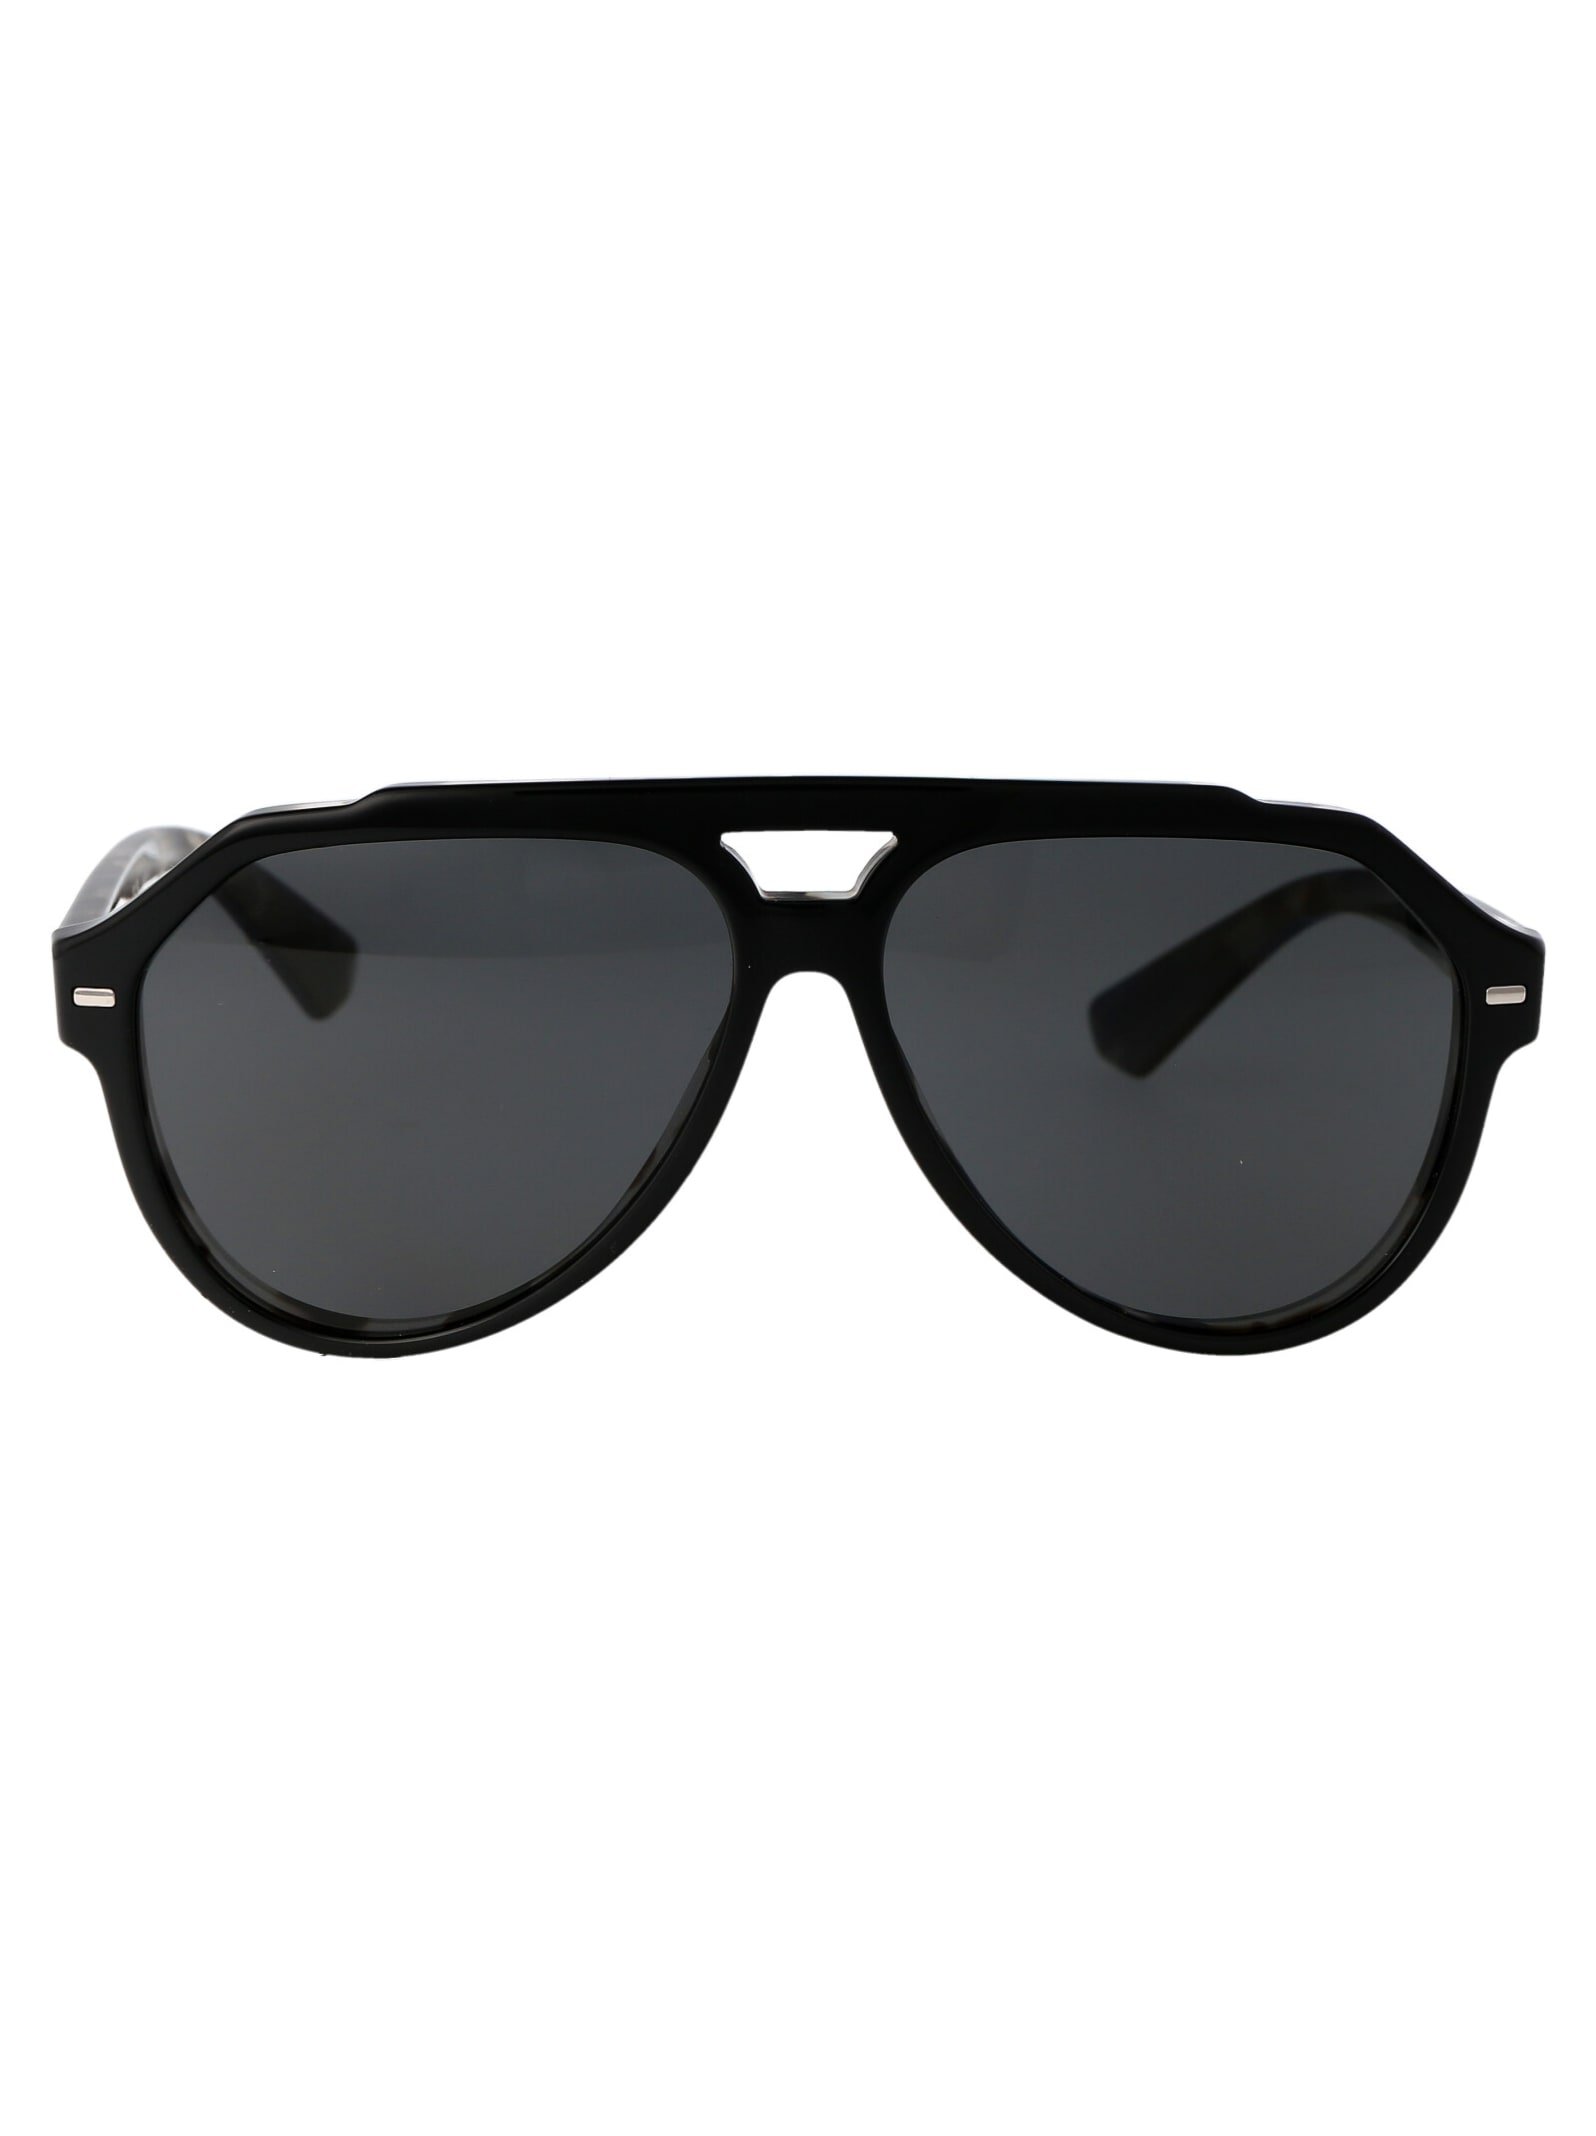 0dg4452 Sunglasses